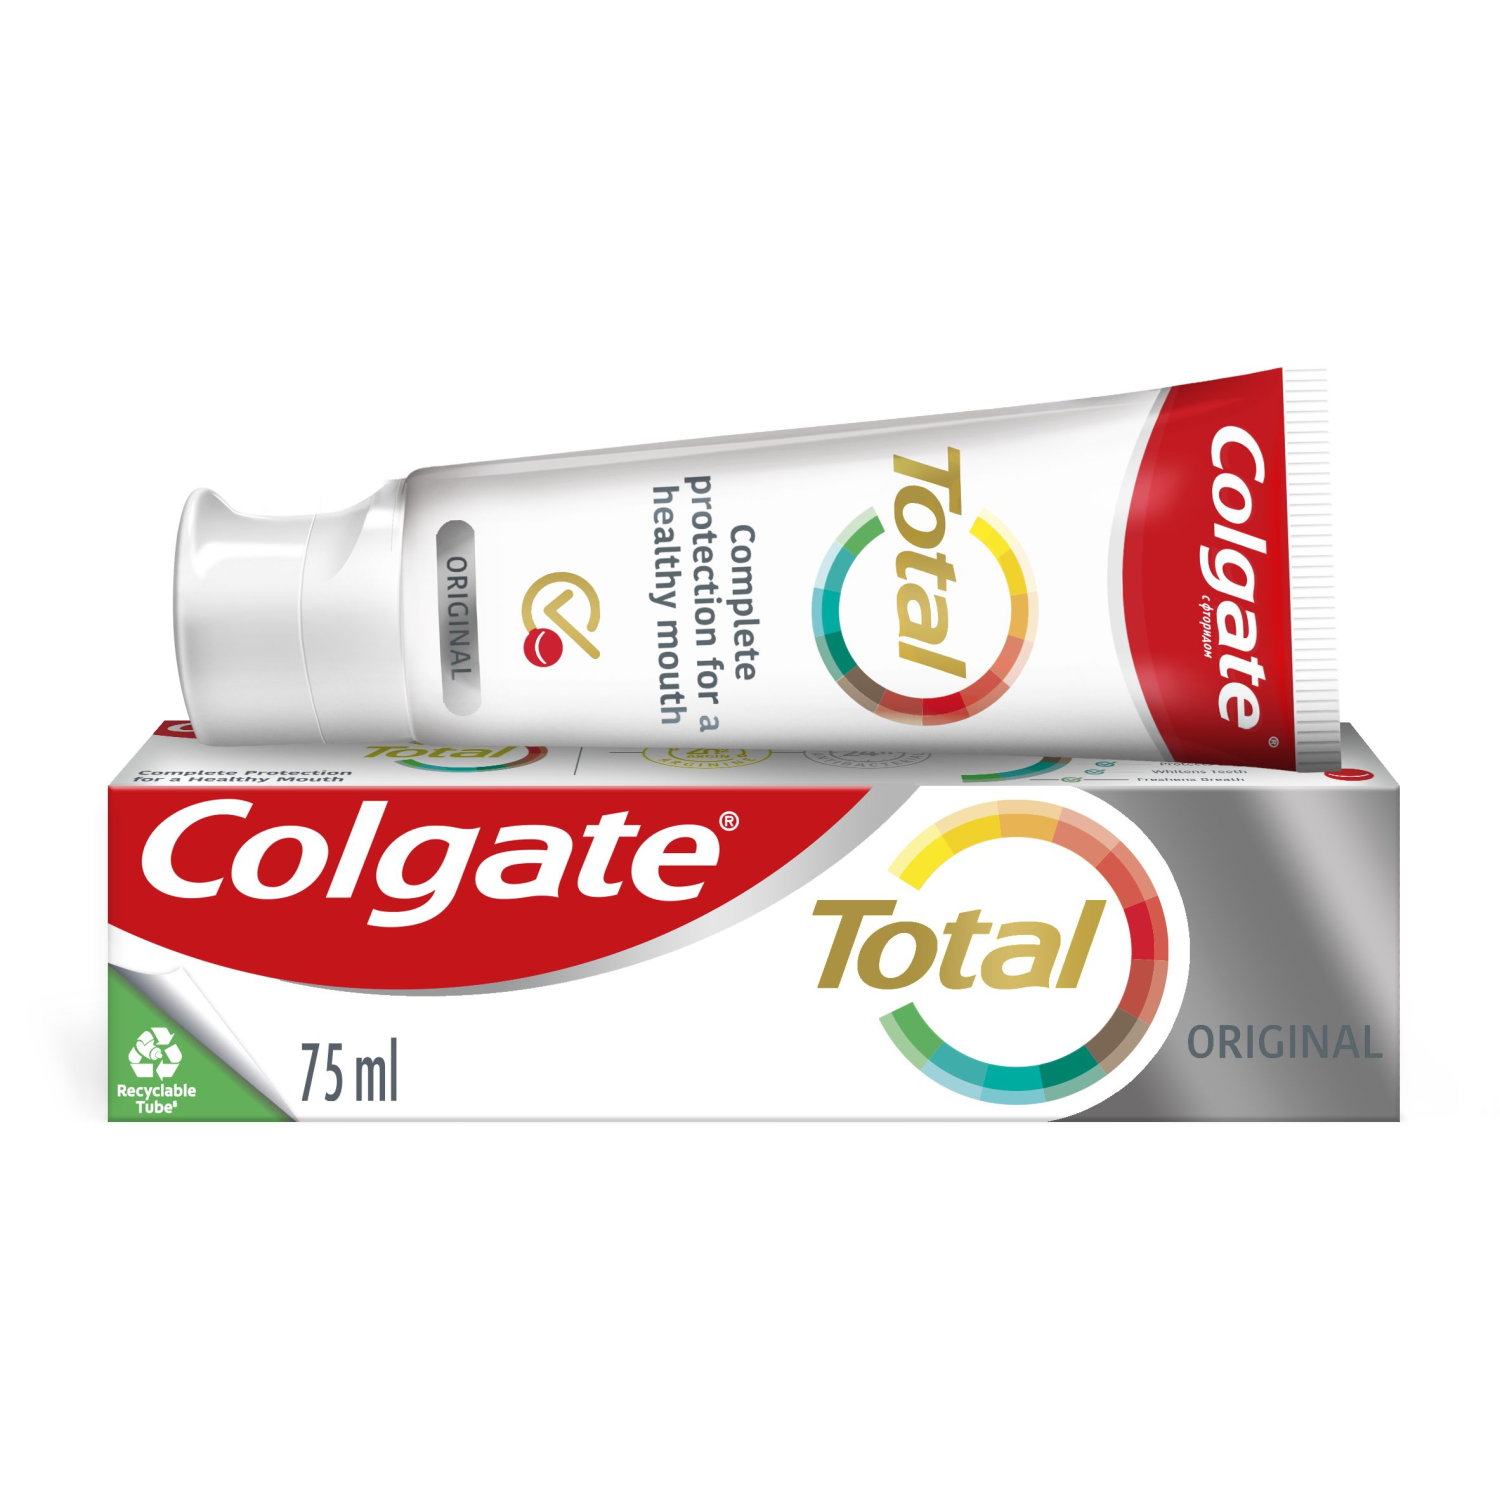 Colgate Toothpaste 75ml Total Original Care